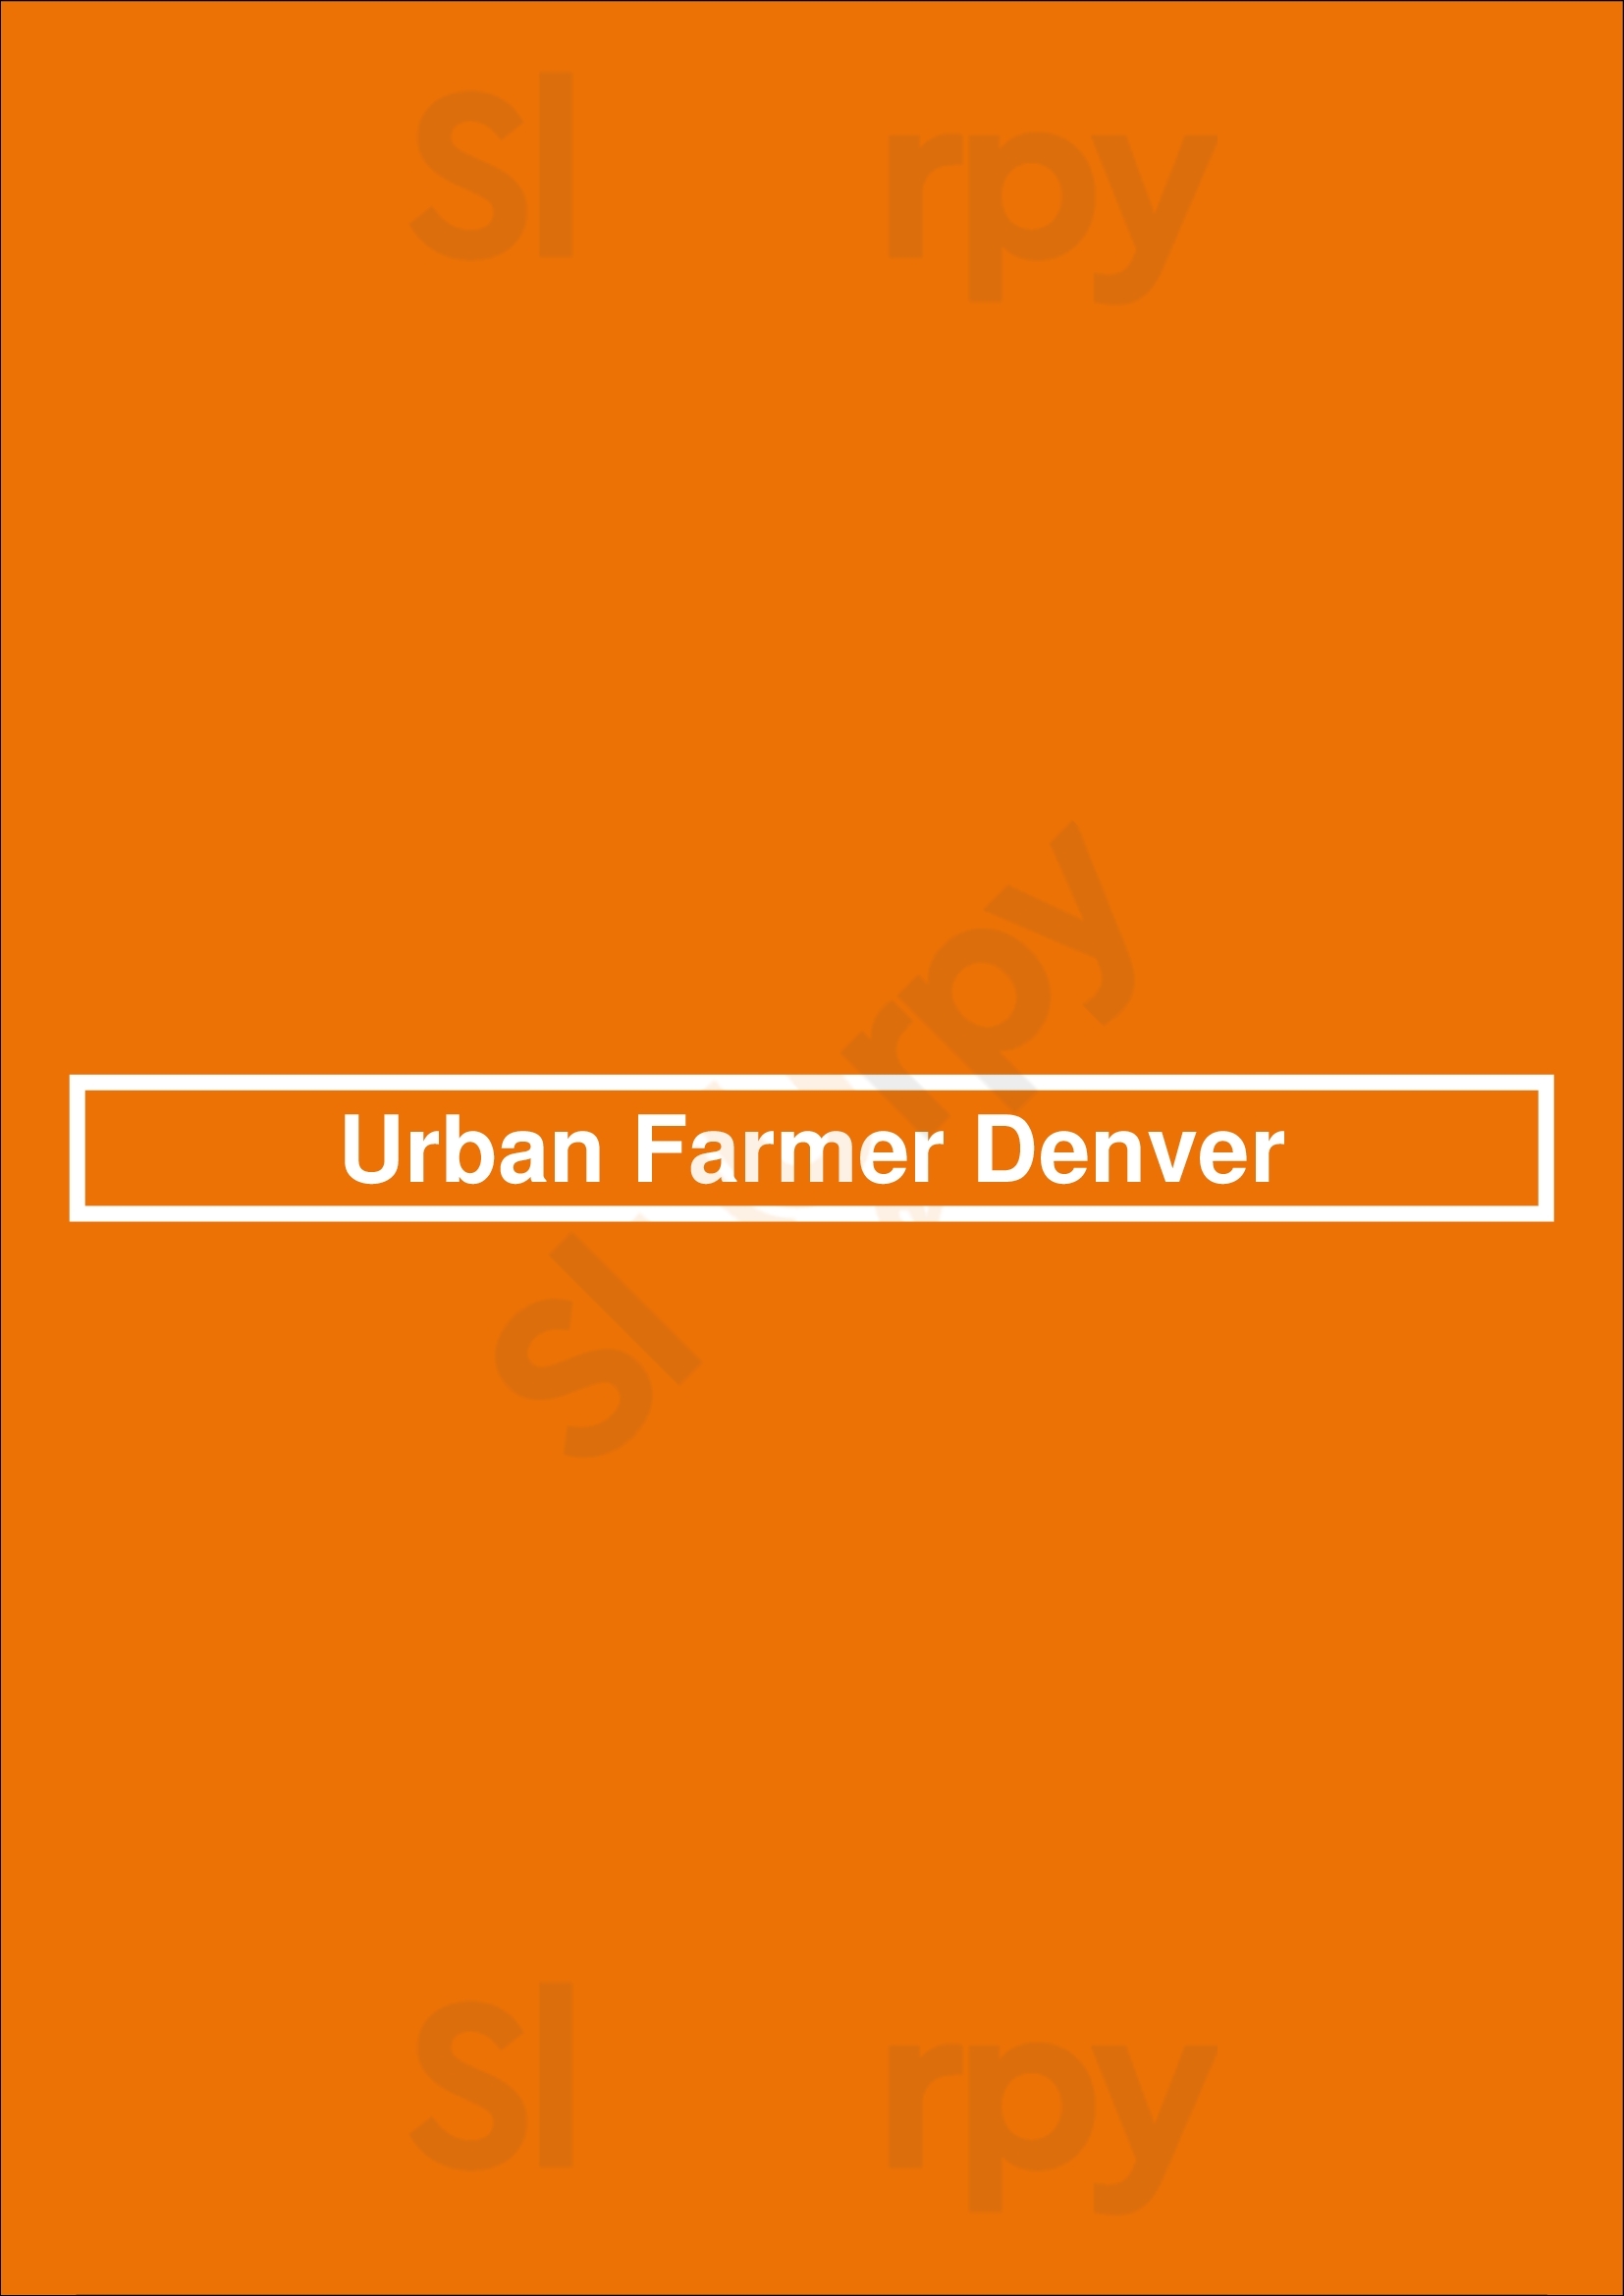 Urban Farmer Denver Denver Menu - 1